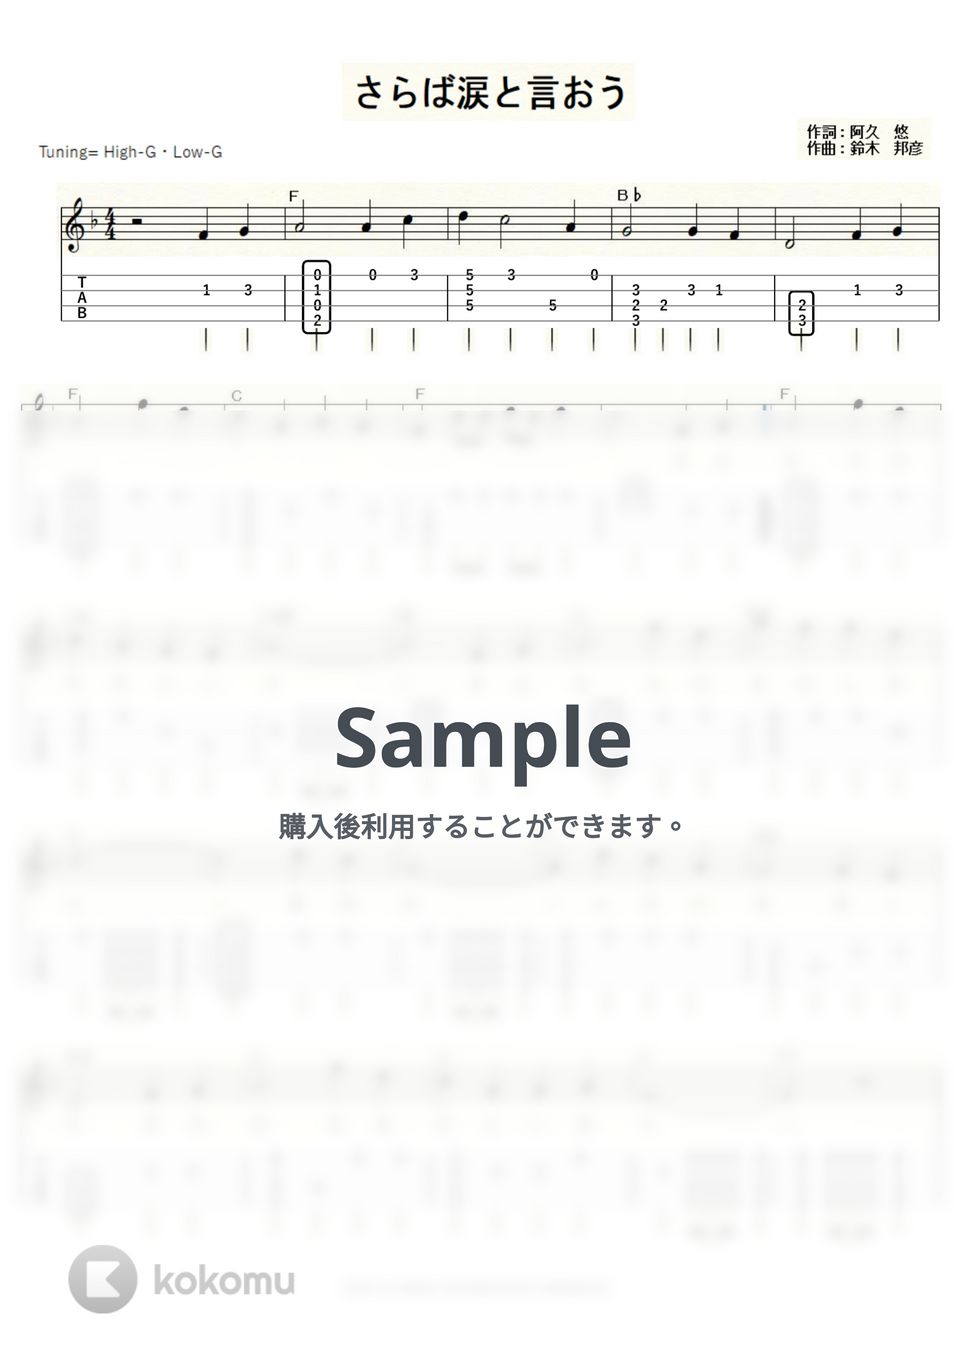 森田健作 - さらば涙と言おう (ｳｸﾚﾚｿﾛ/High-G・Low-G/中級) by ukulelepapa